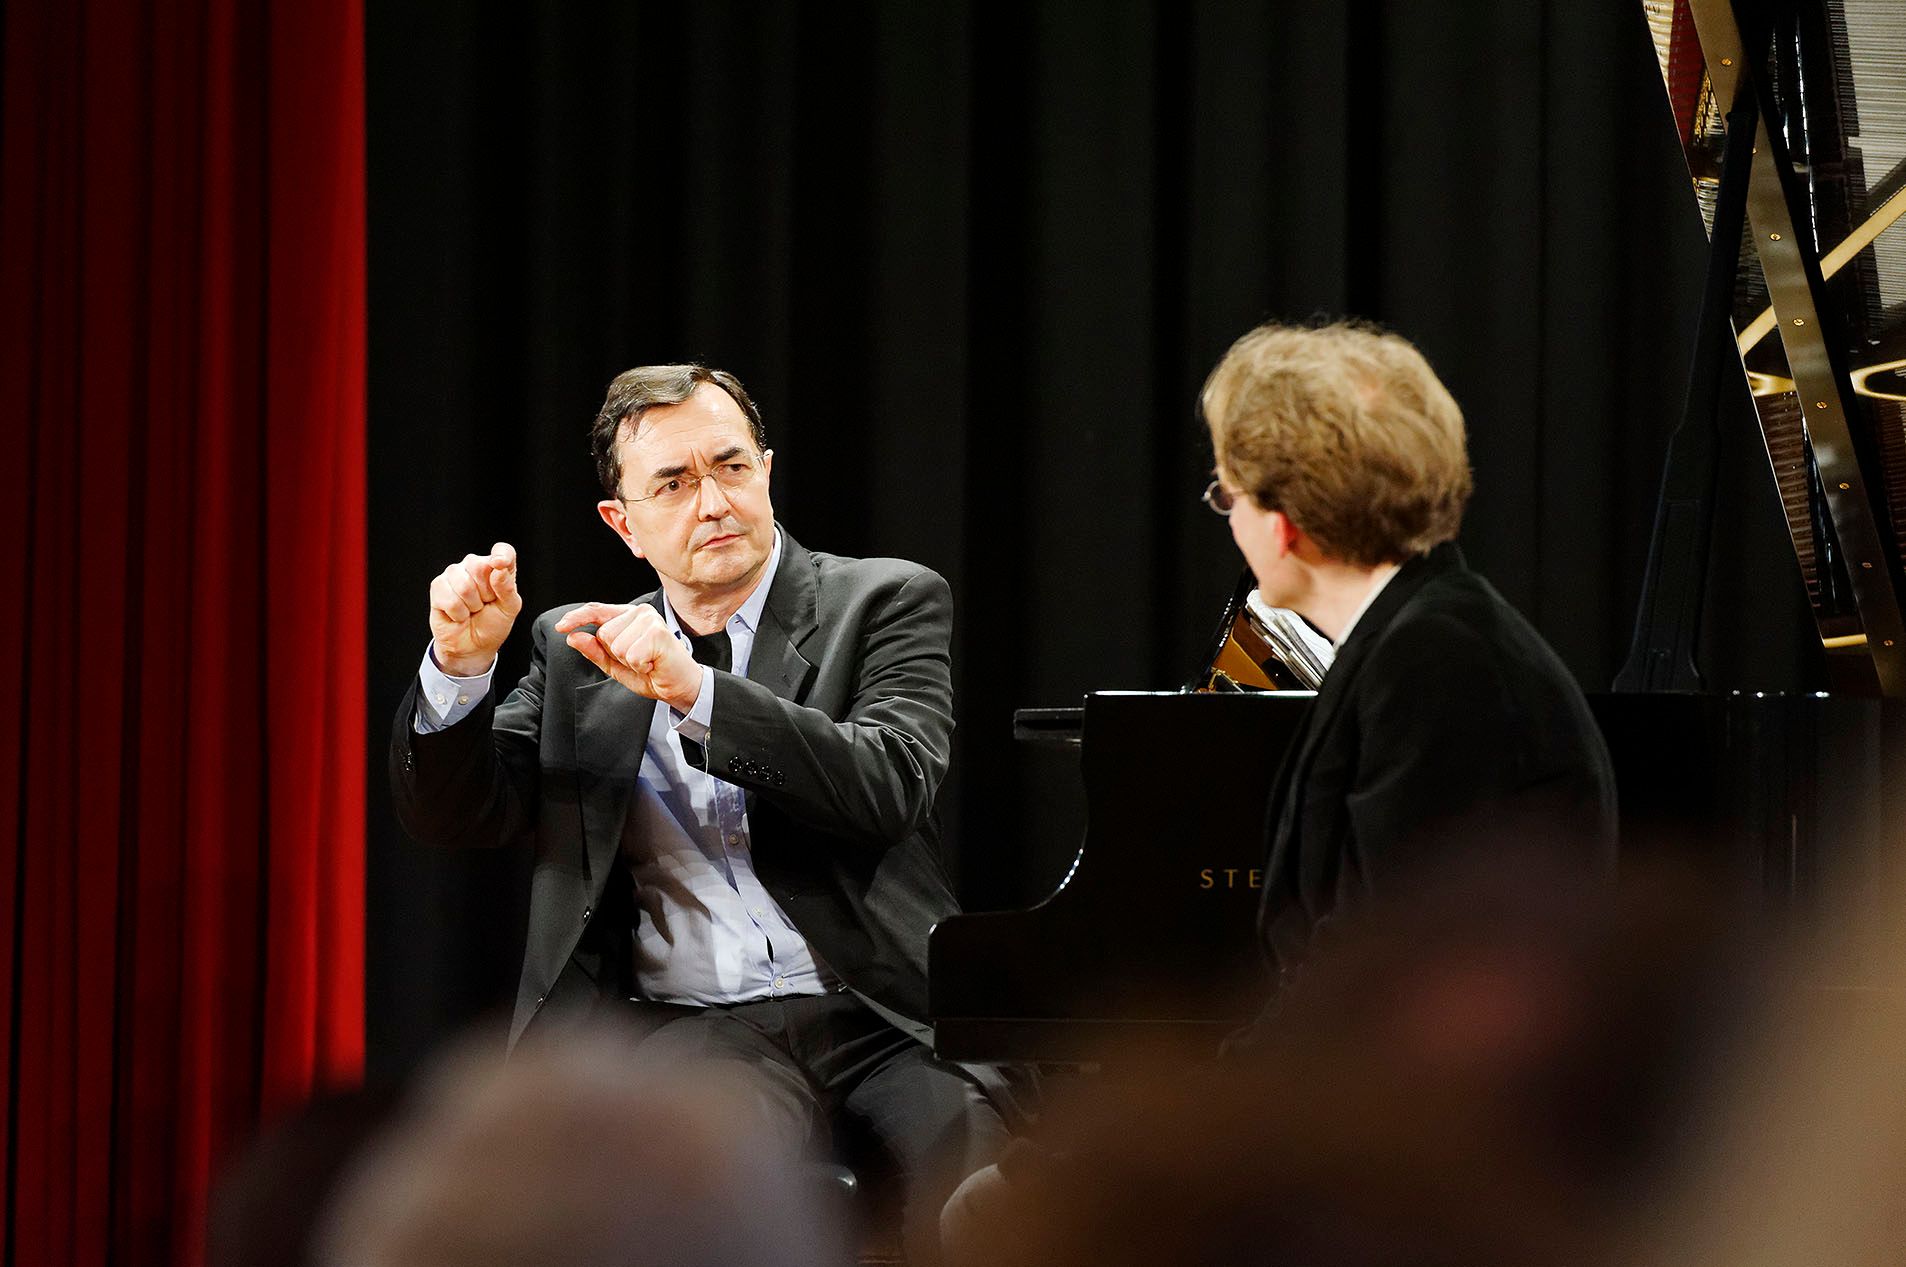 Klavierfestival Ruhr / Pierre-Laurent Aimard (l.) und Tobias Bleek im Gespräch über György Ligeti und die &quot;Motorische Intelligenz&quot; © KFR/Mark Wohlrab